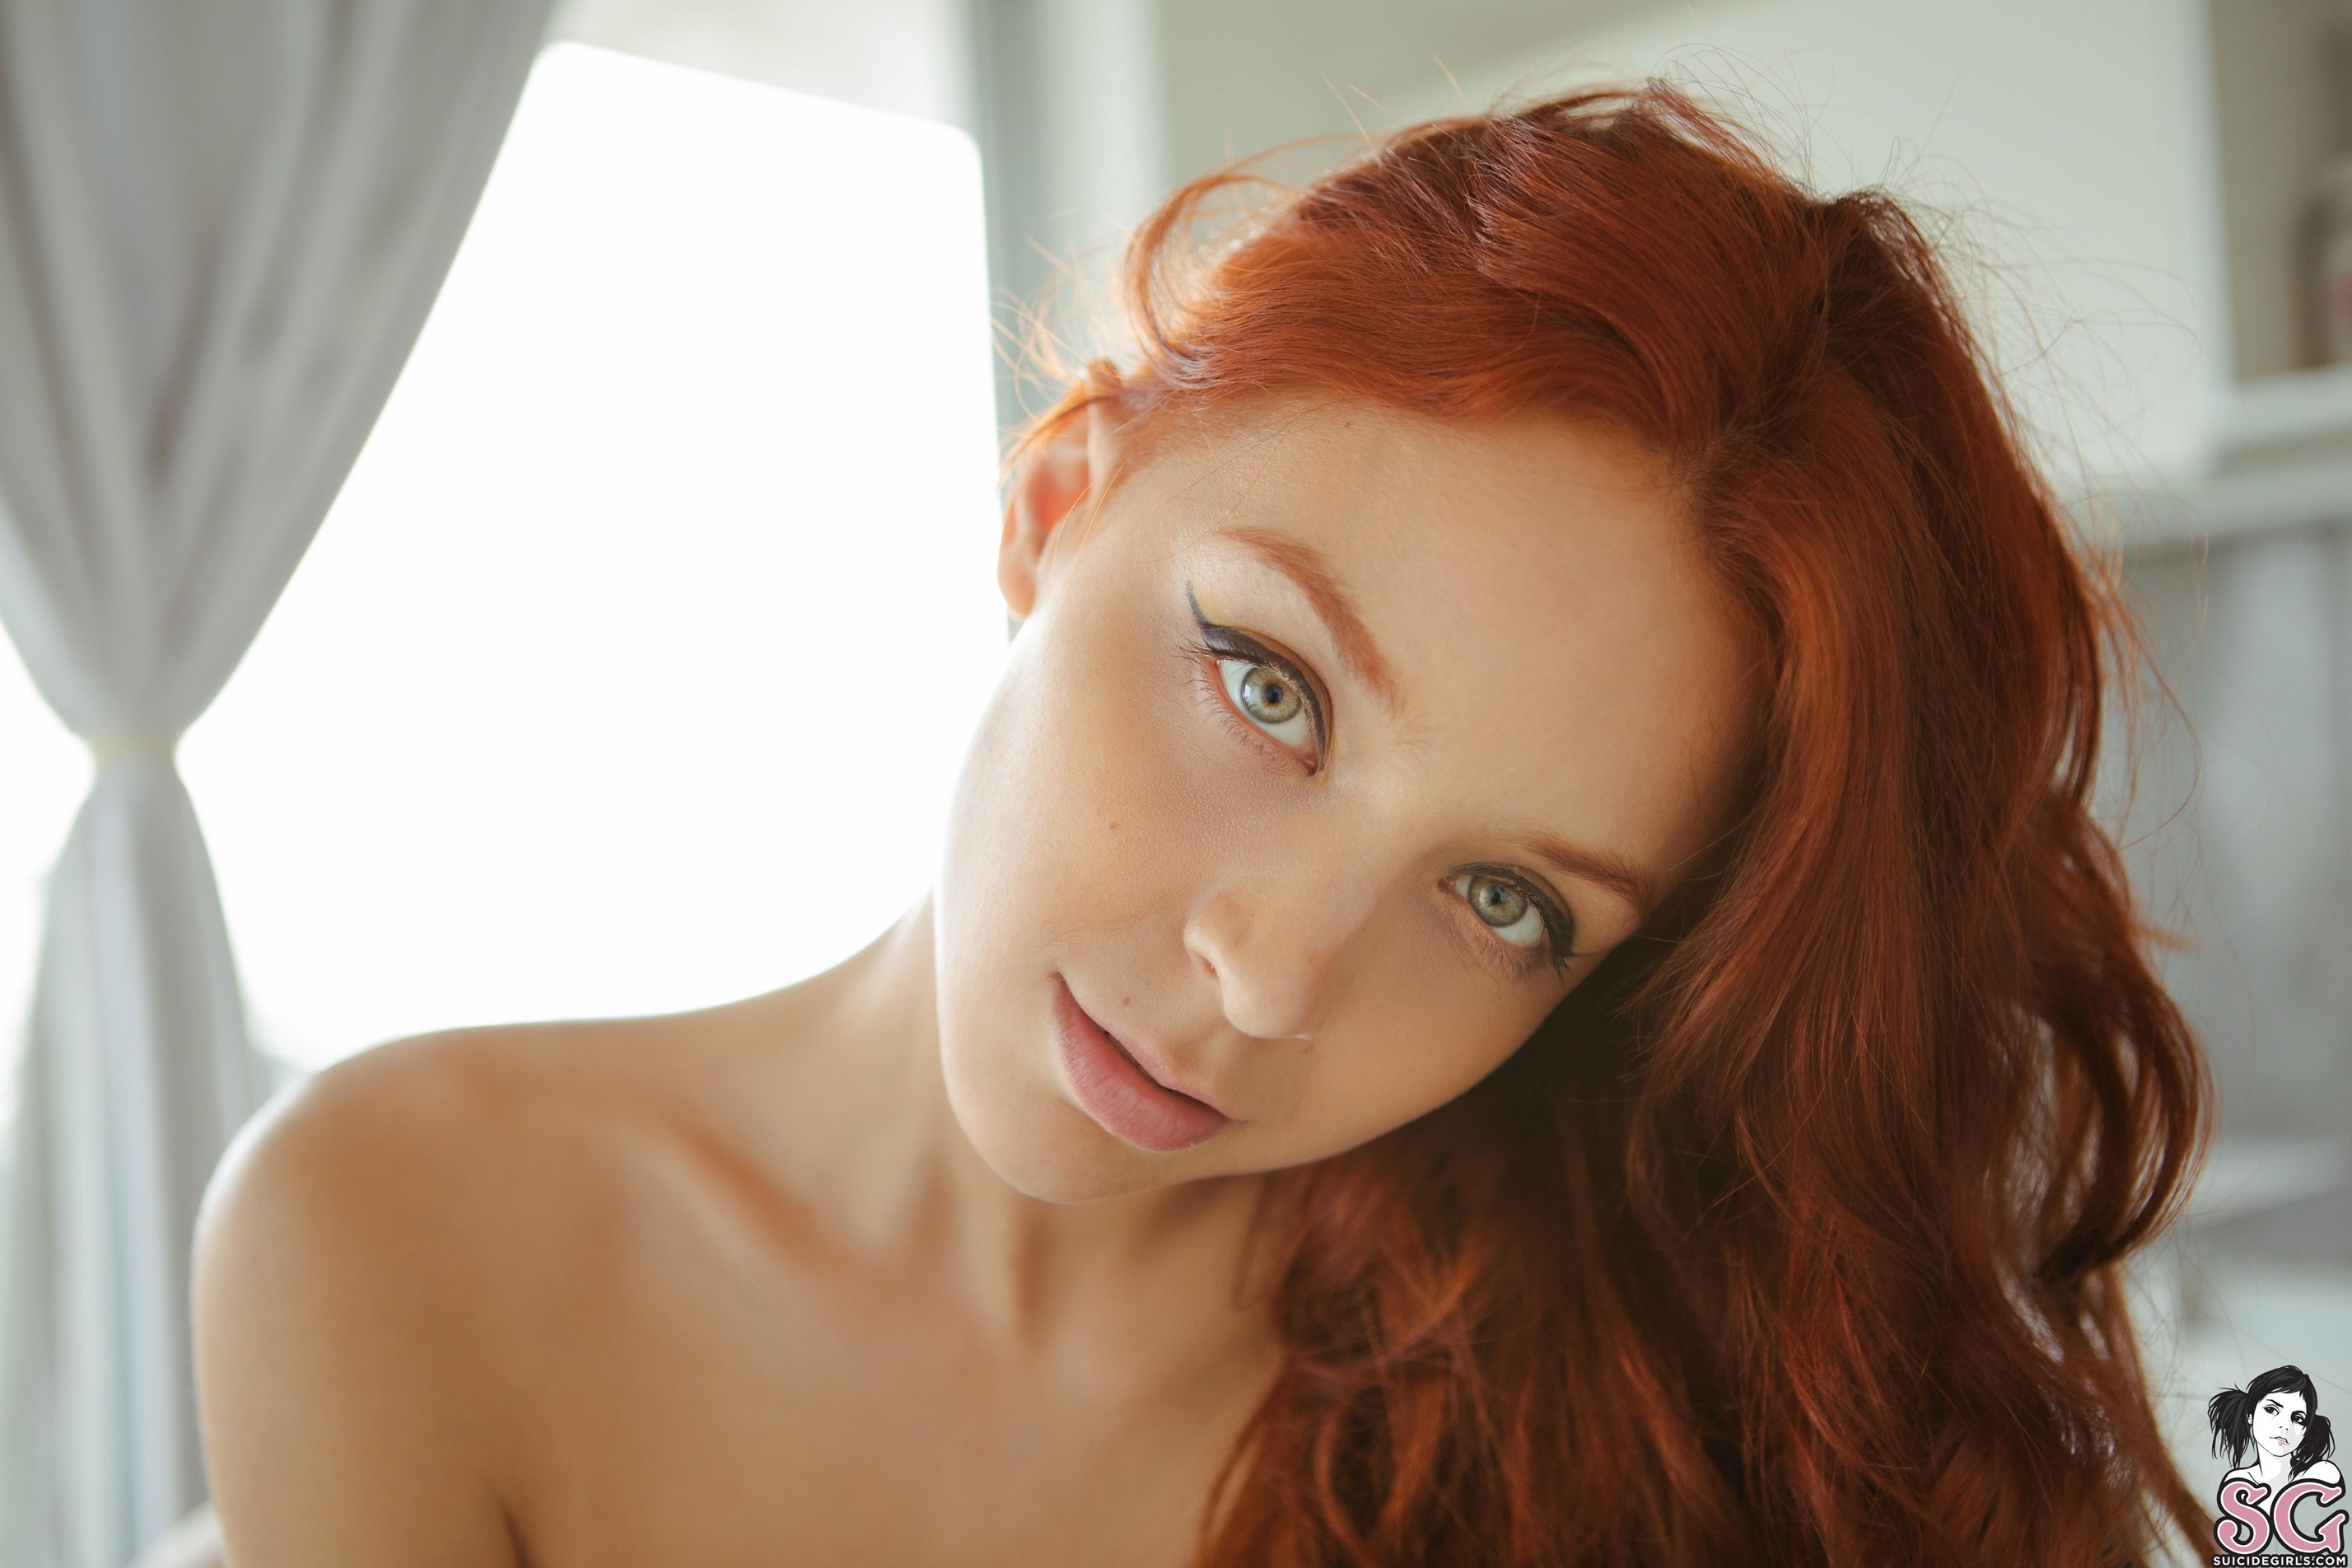 European glamour photo redhead